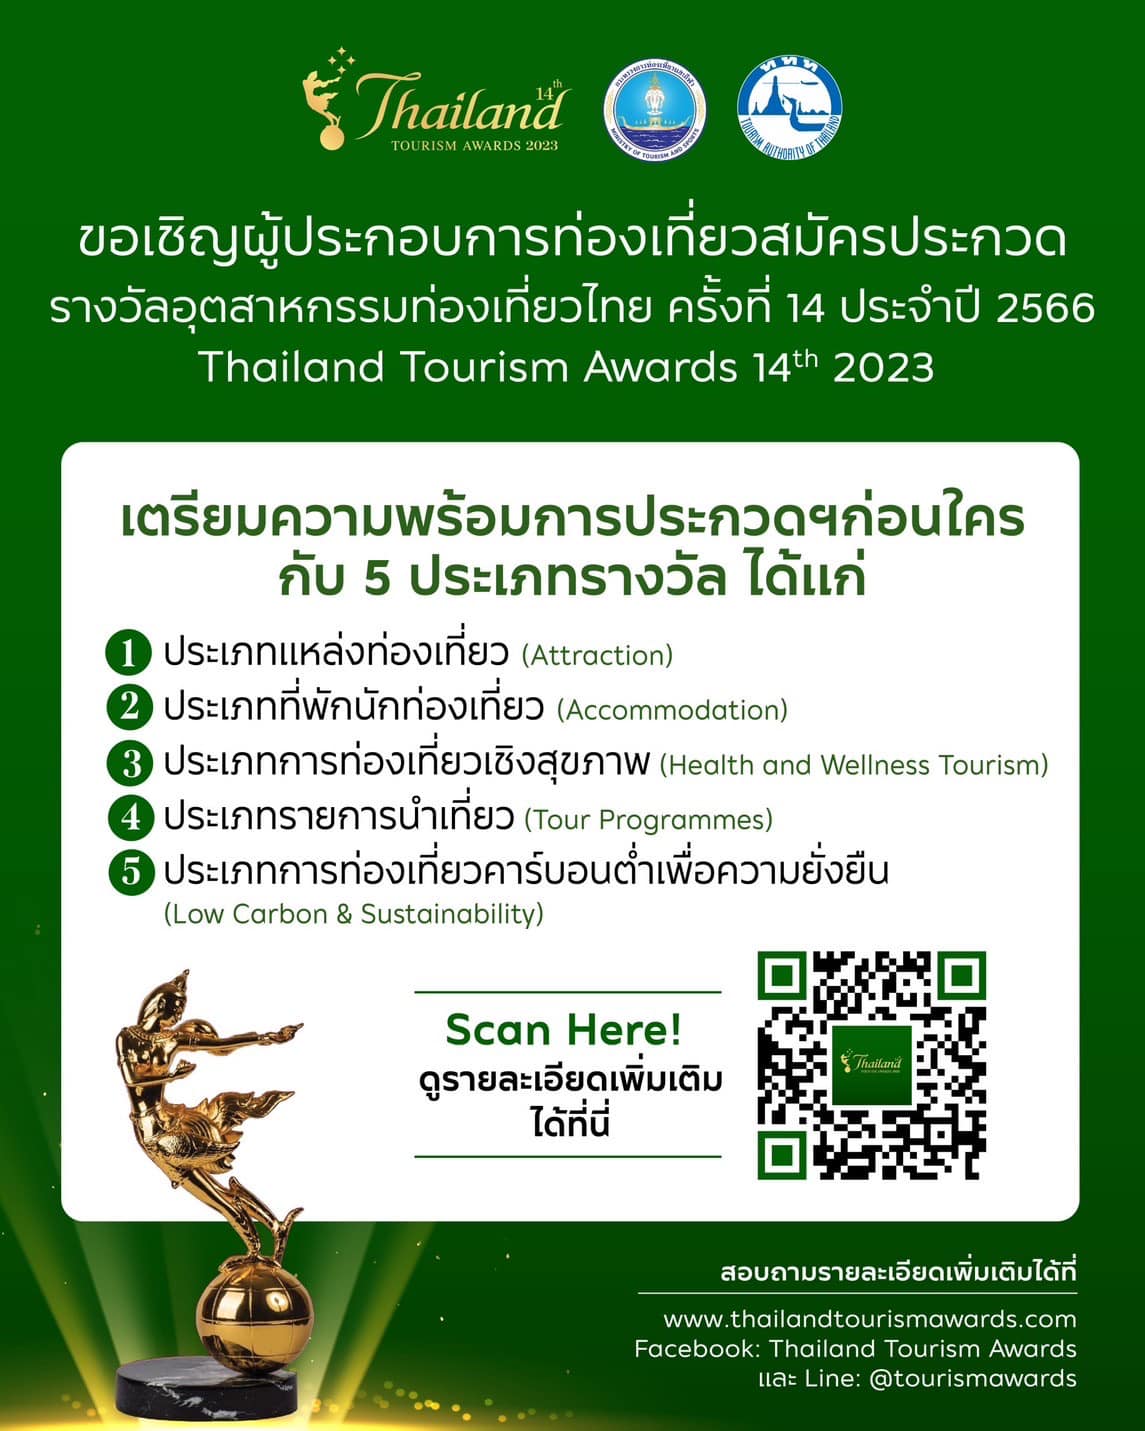 ททท. ขอเชิญผู้ประกอบการท่องเที่ยวสมัครประกวดรางวัลอุตสาหกรรมท่องเที่ยวไทย ครั้งที่ 14 ประจำปี 2566 Thailand Tourism Awards 14th 2023